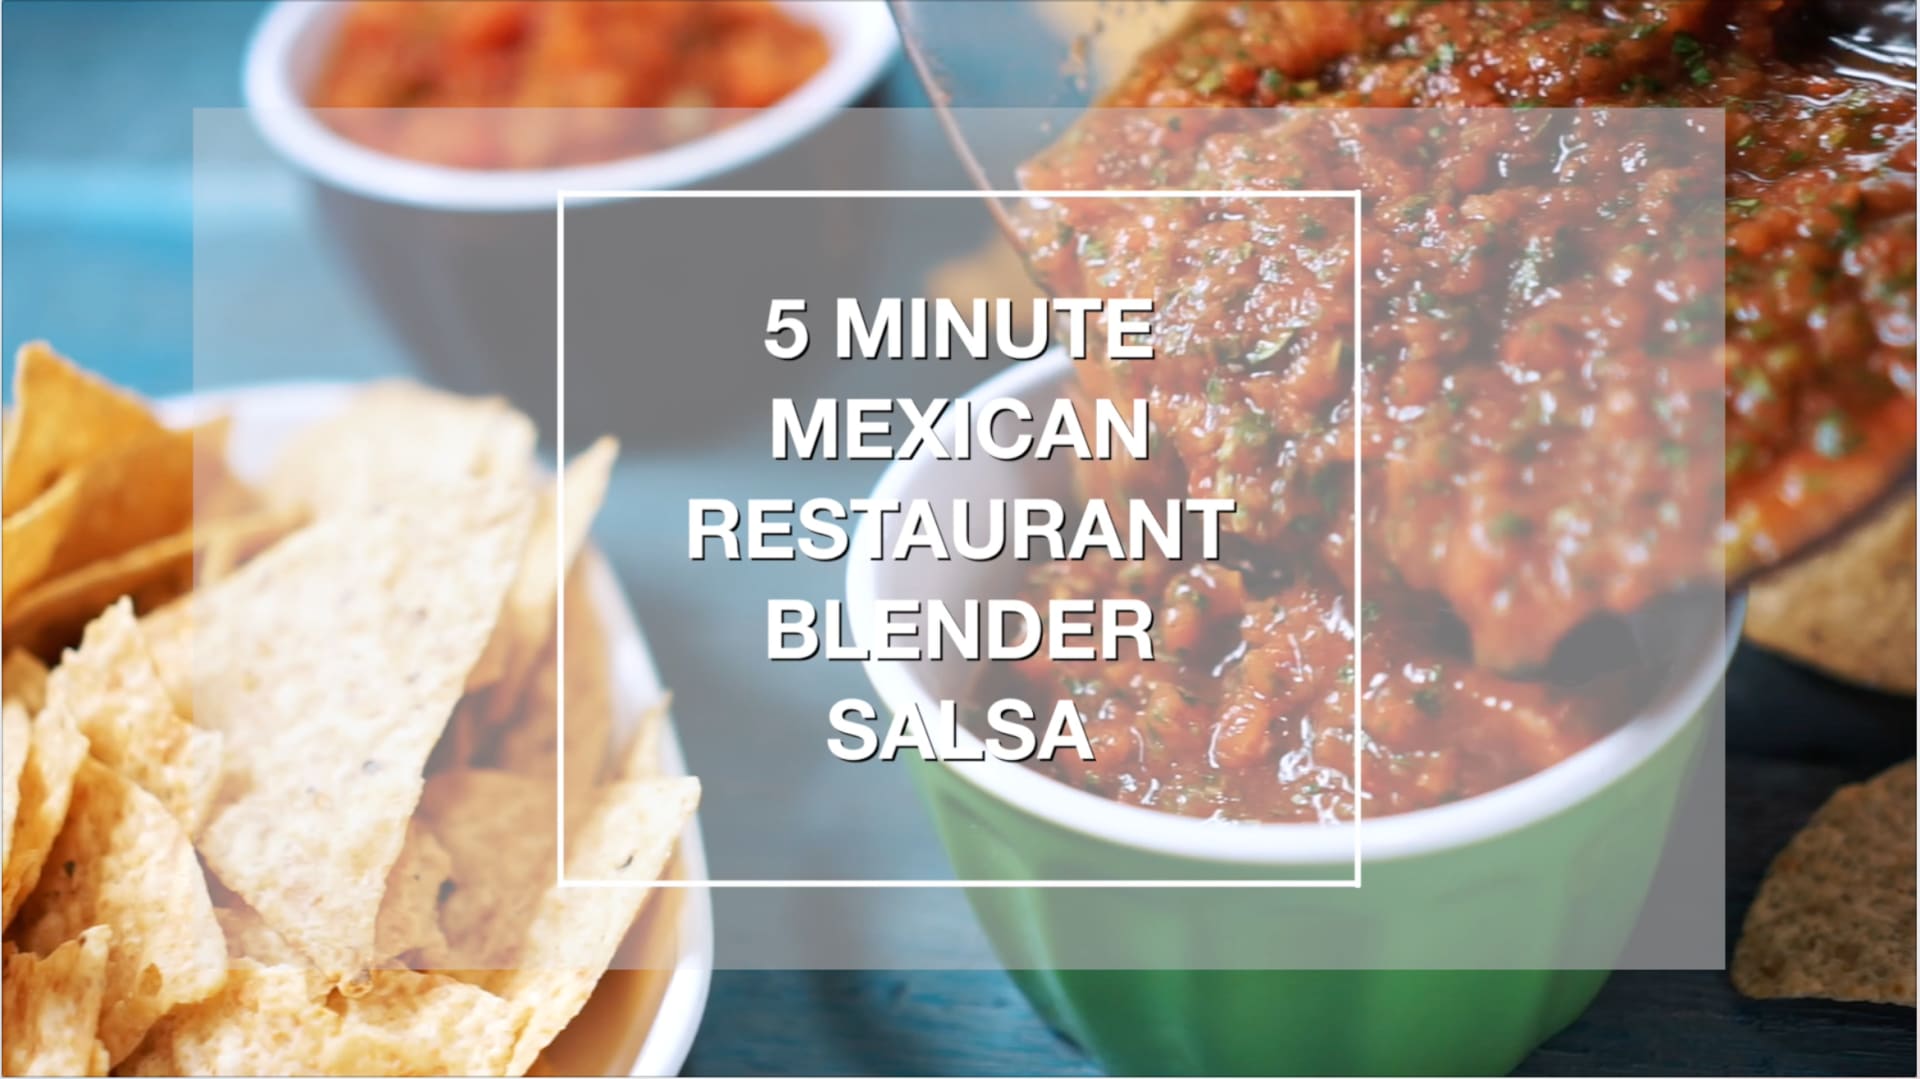 BEST Blender Restaurant Style Salsa Recipe - An Edible Mosaic™